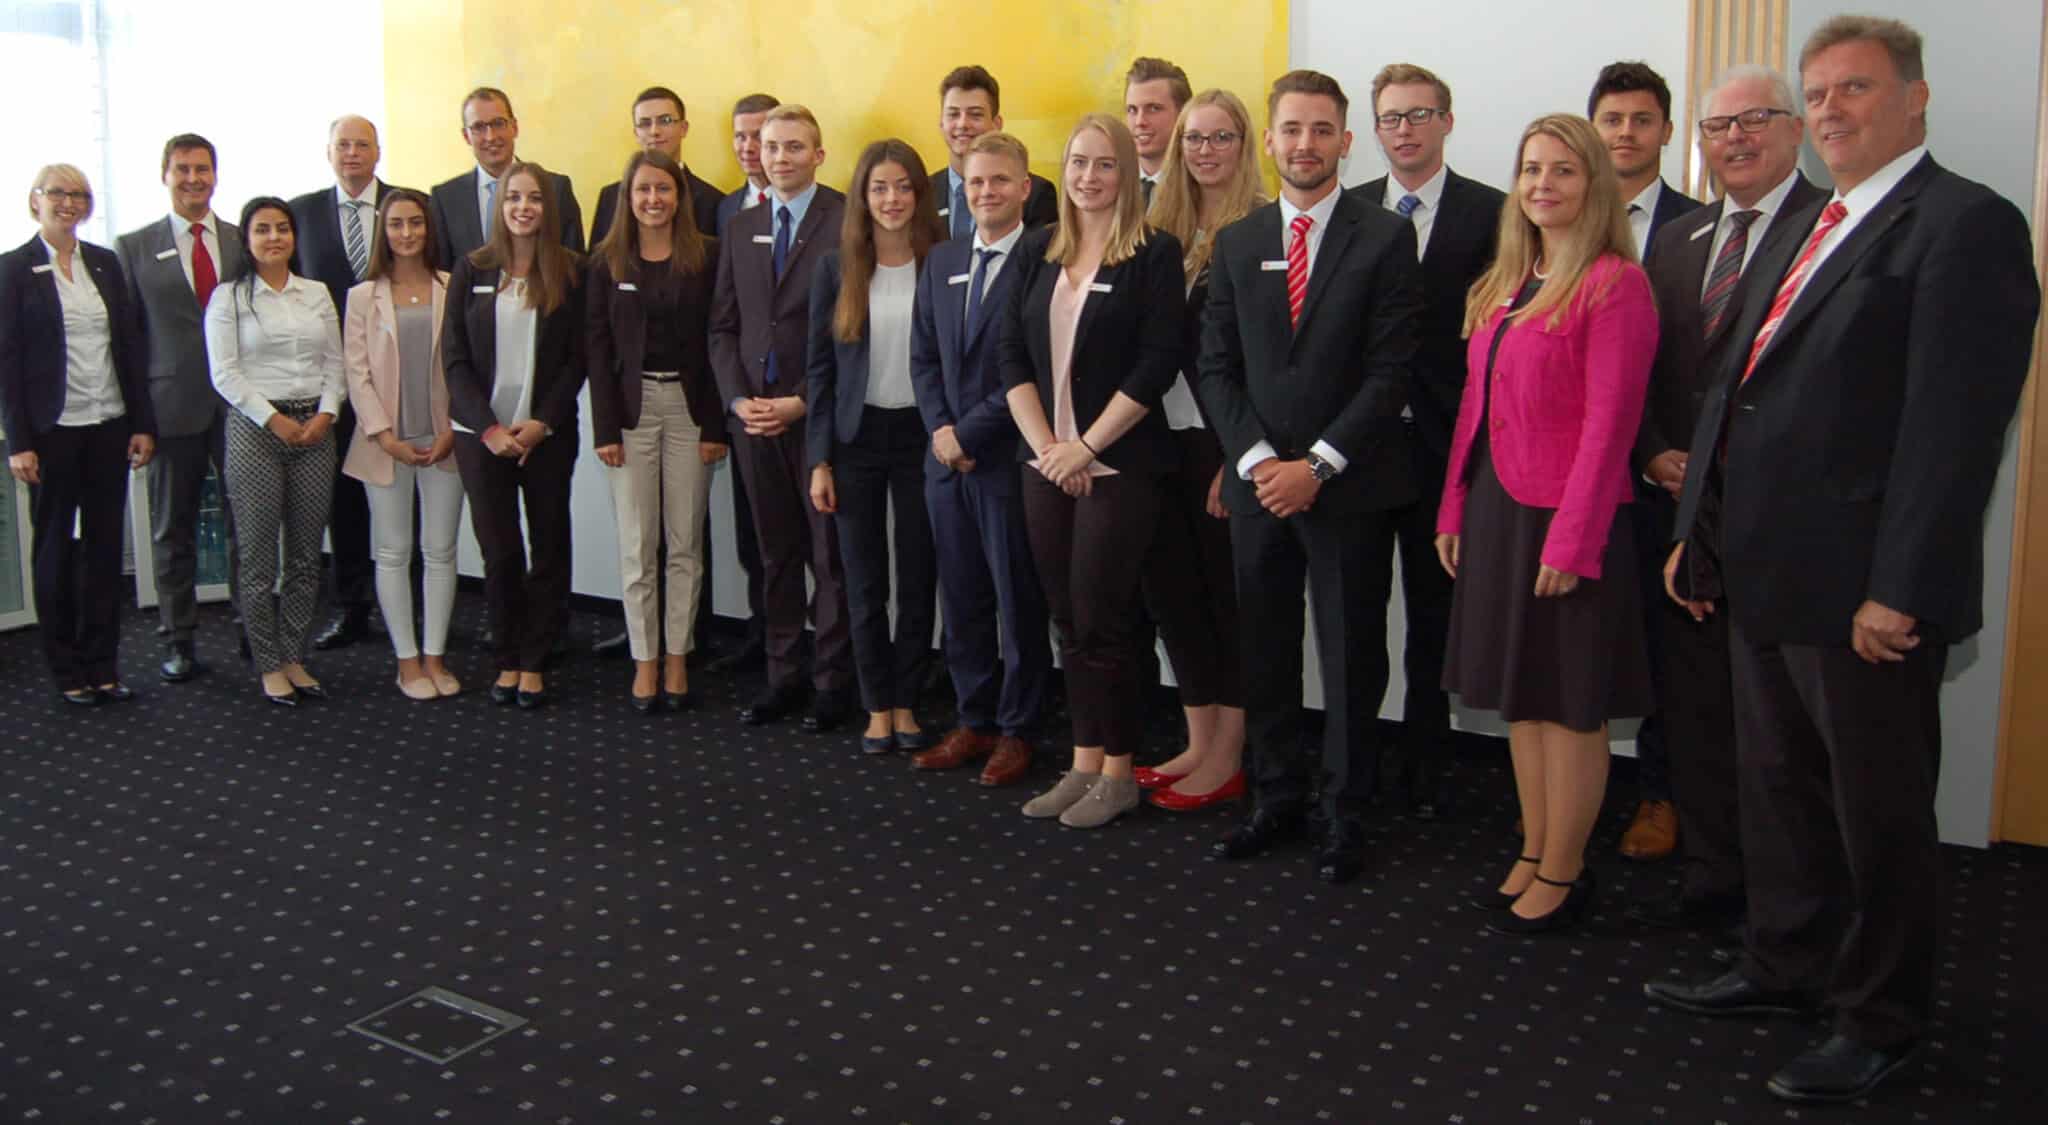 Die neuen Auszubildenden der Sparkasse Koblenz zusammen mit dem Sparkassenvorstand, Vertretern des Personalrats und des Bereichs Personal.